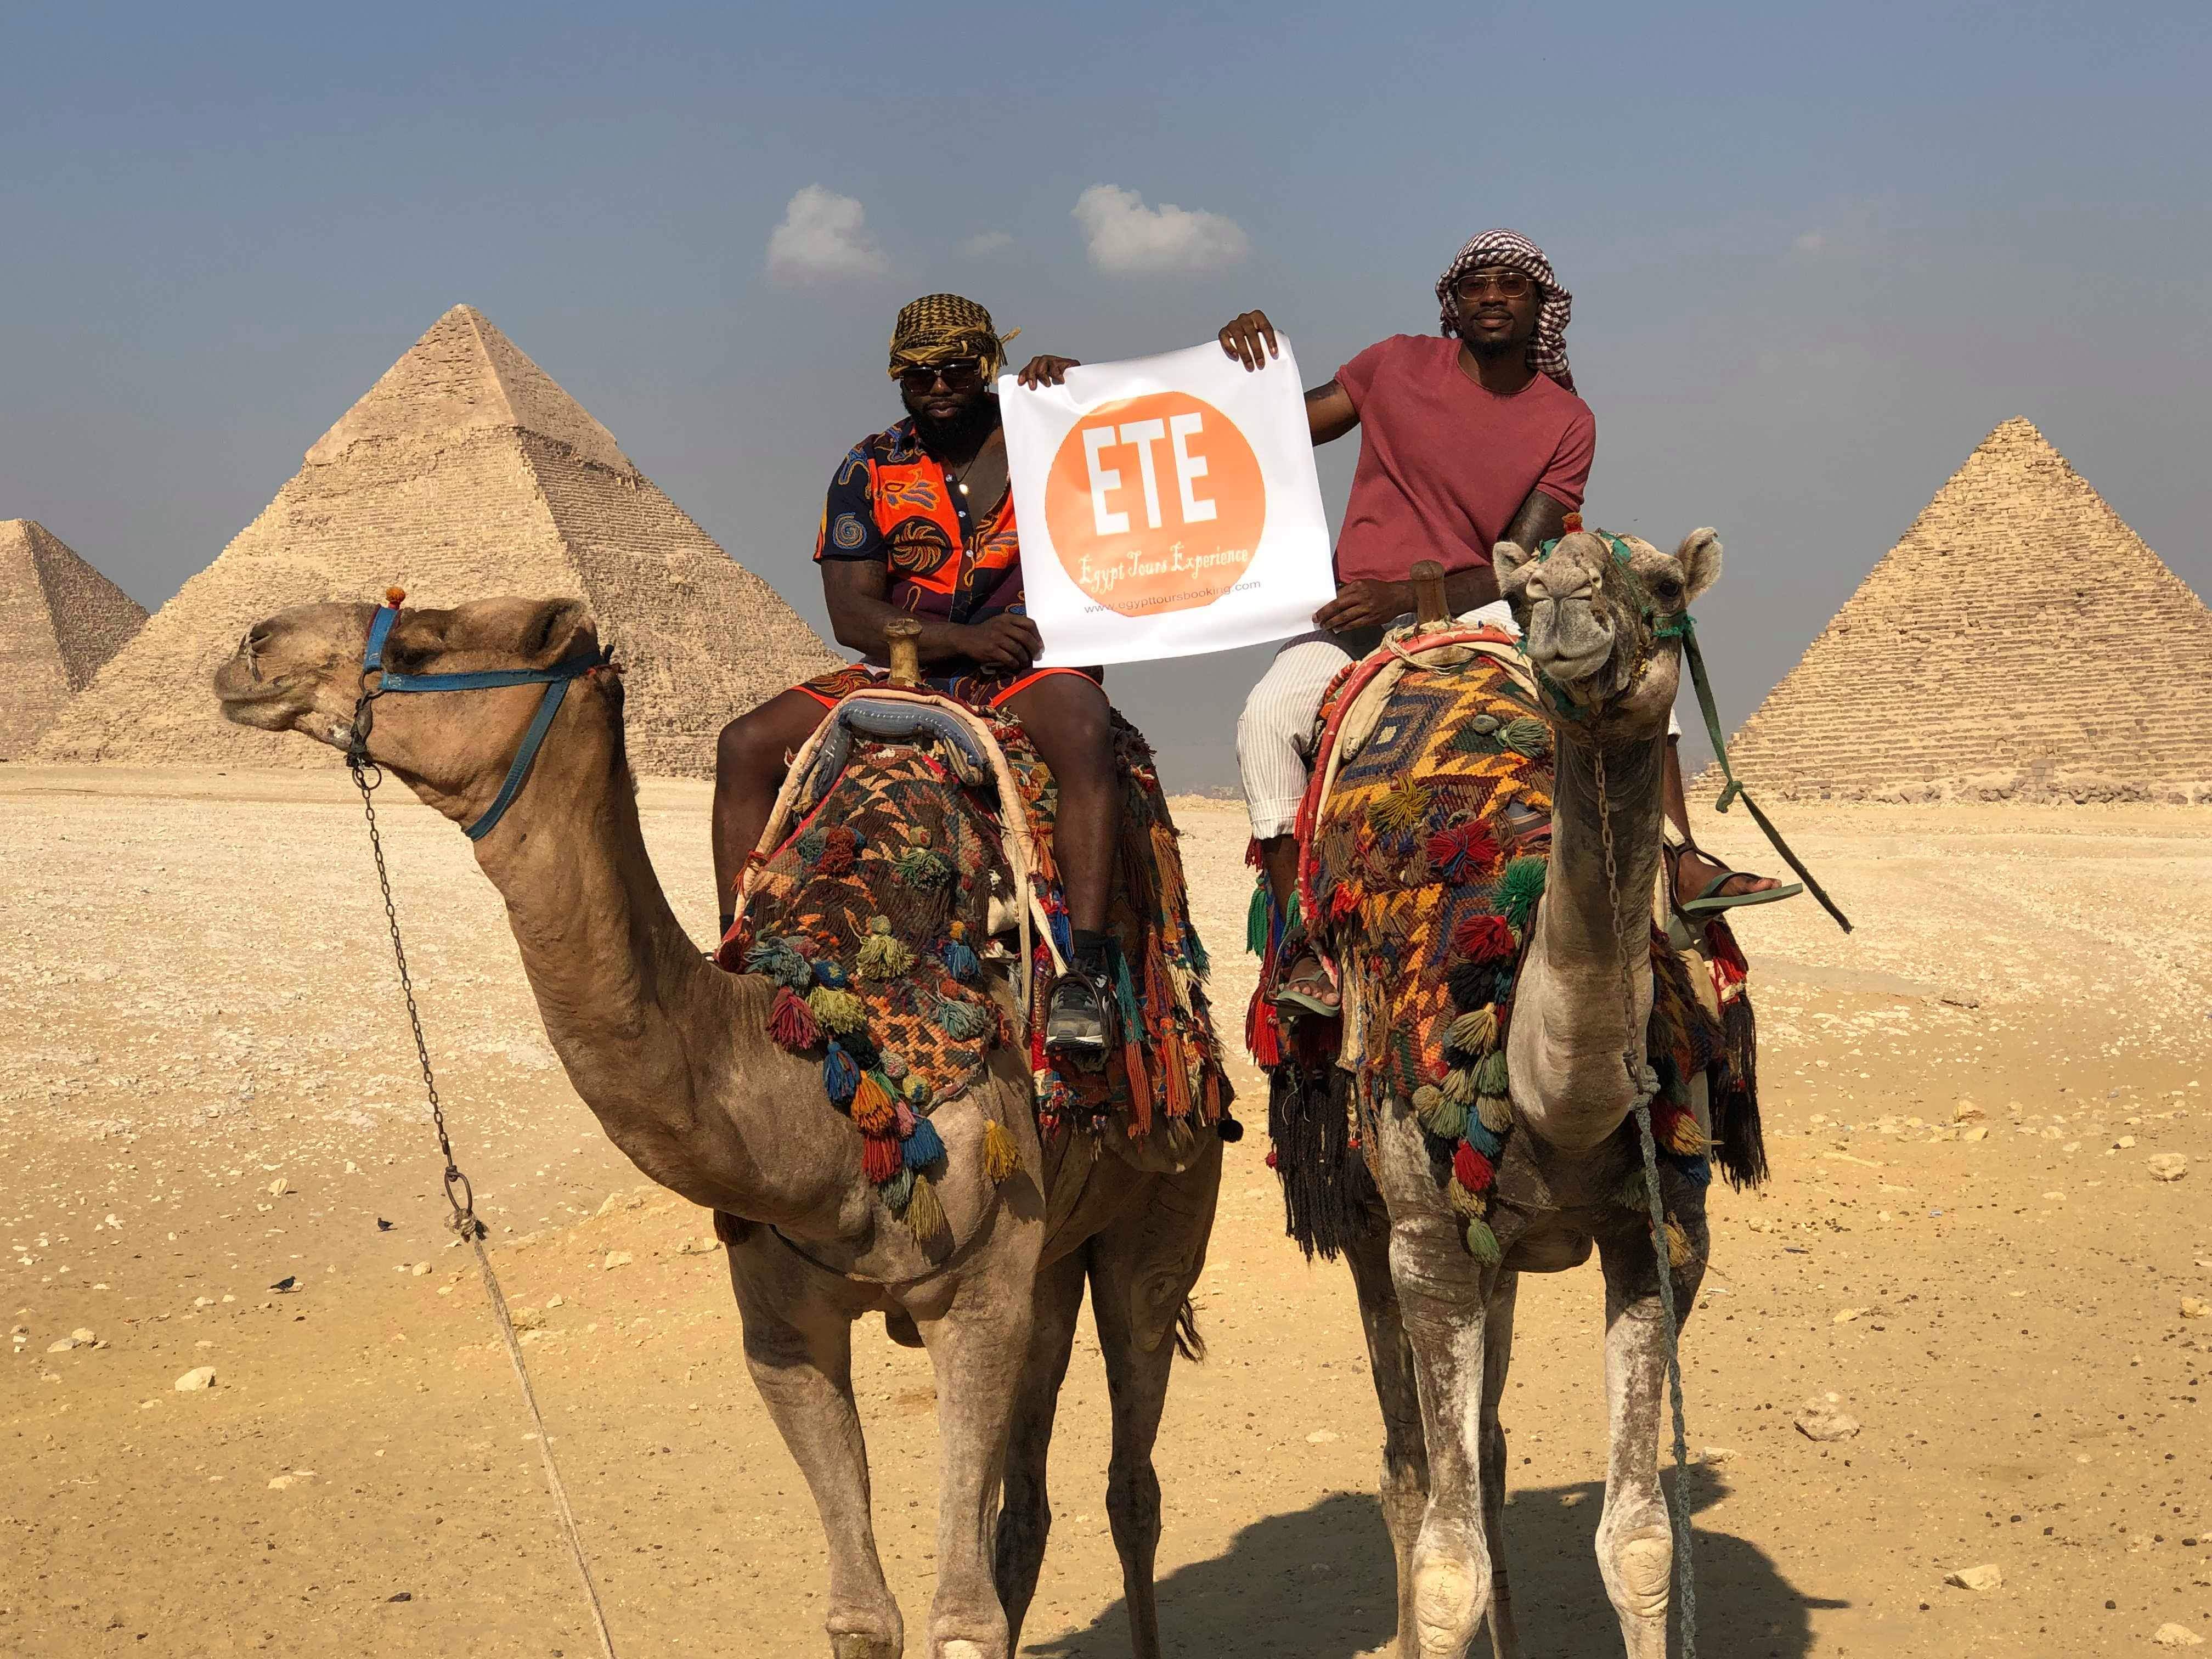 egypt travel agents association